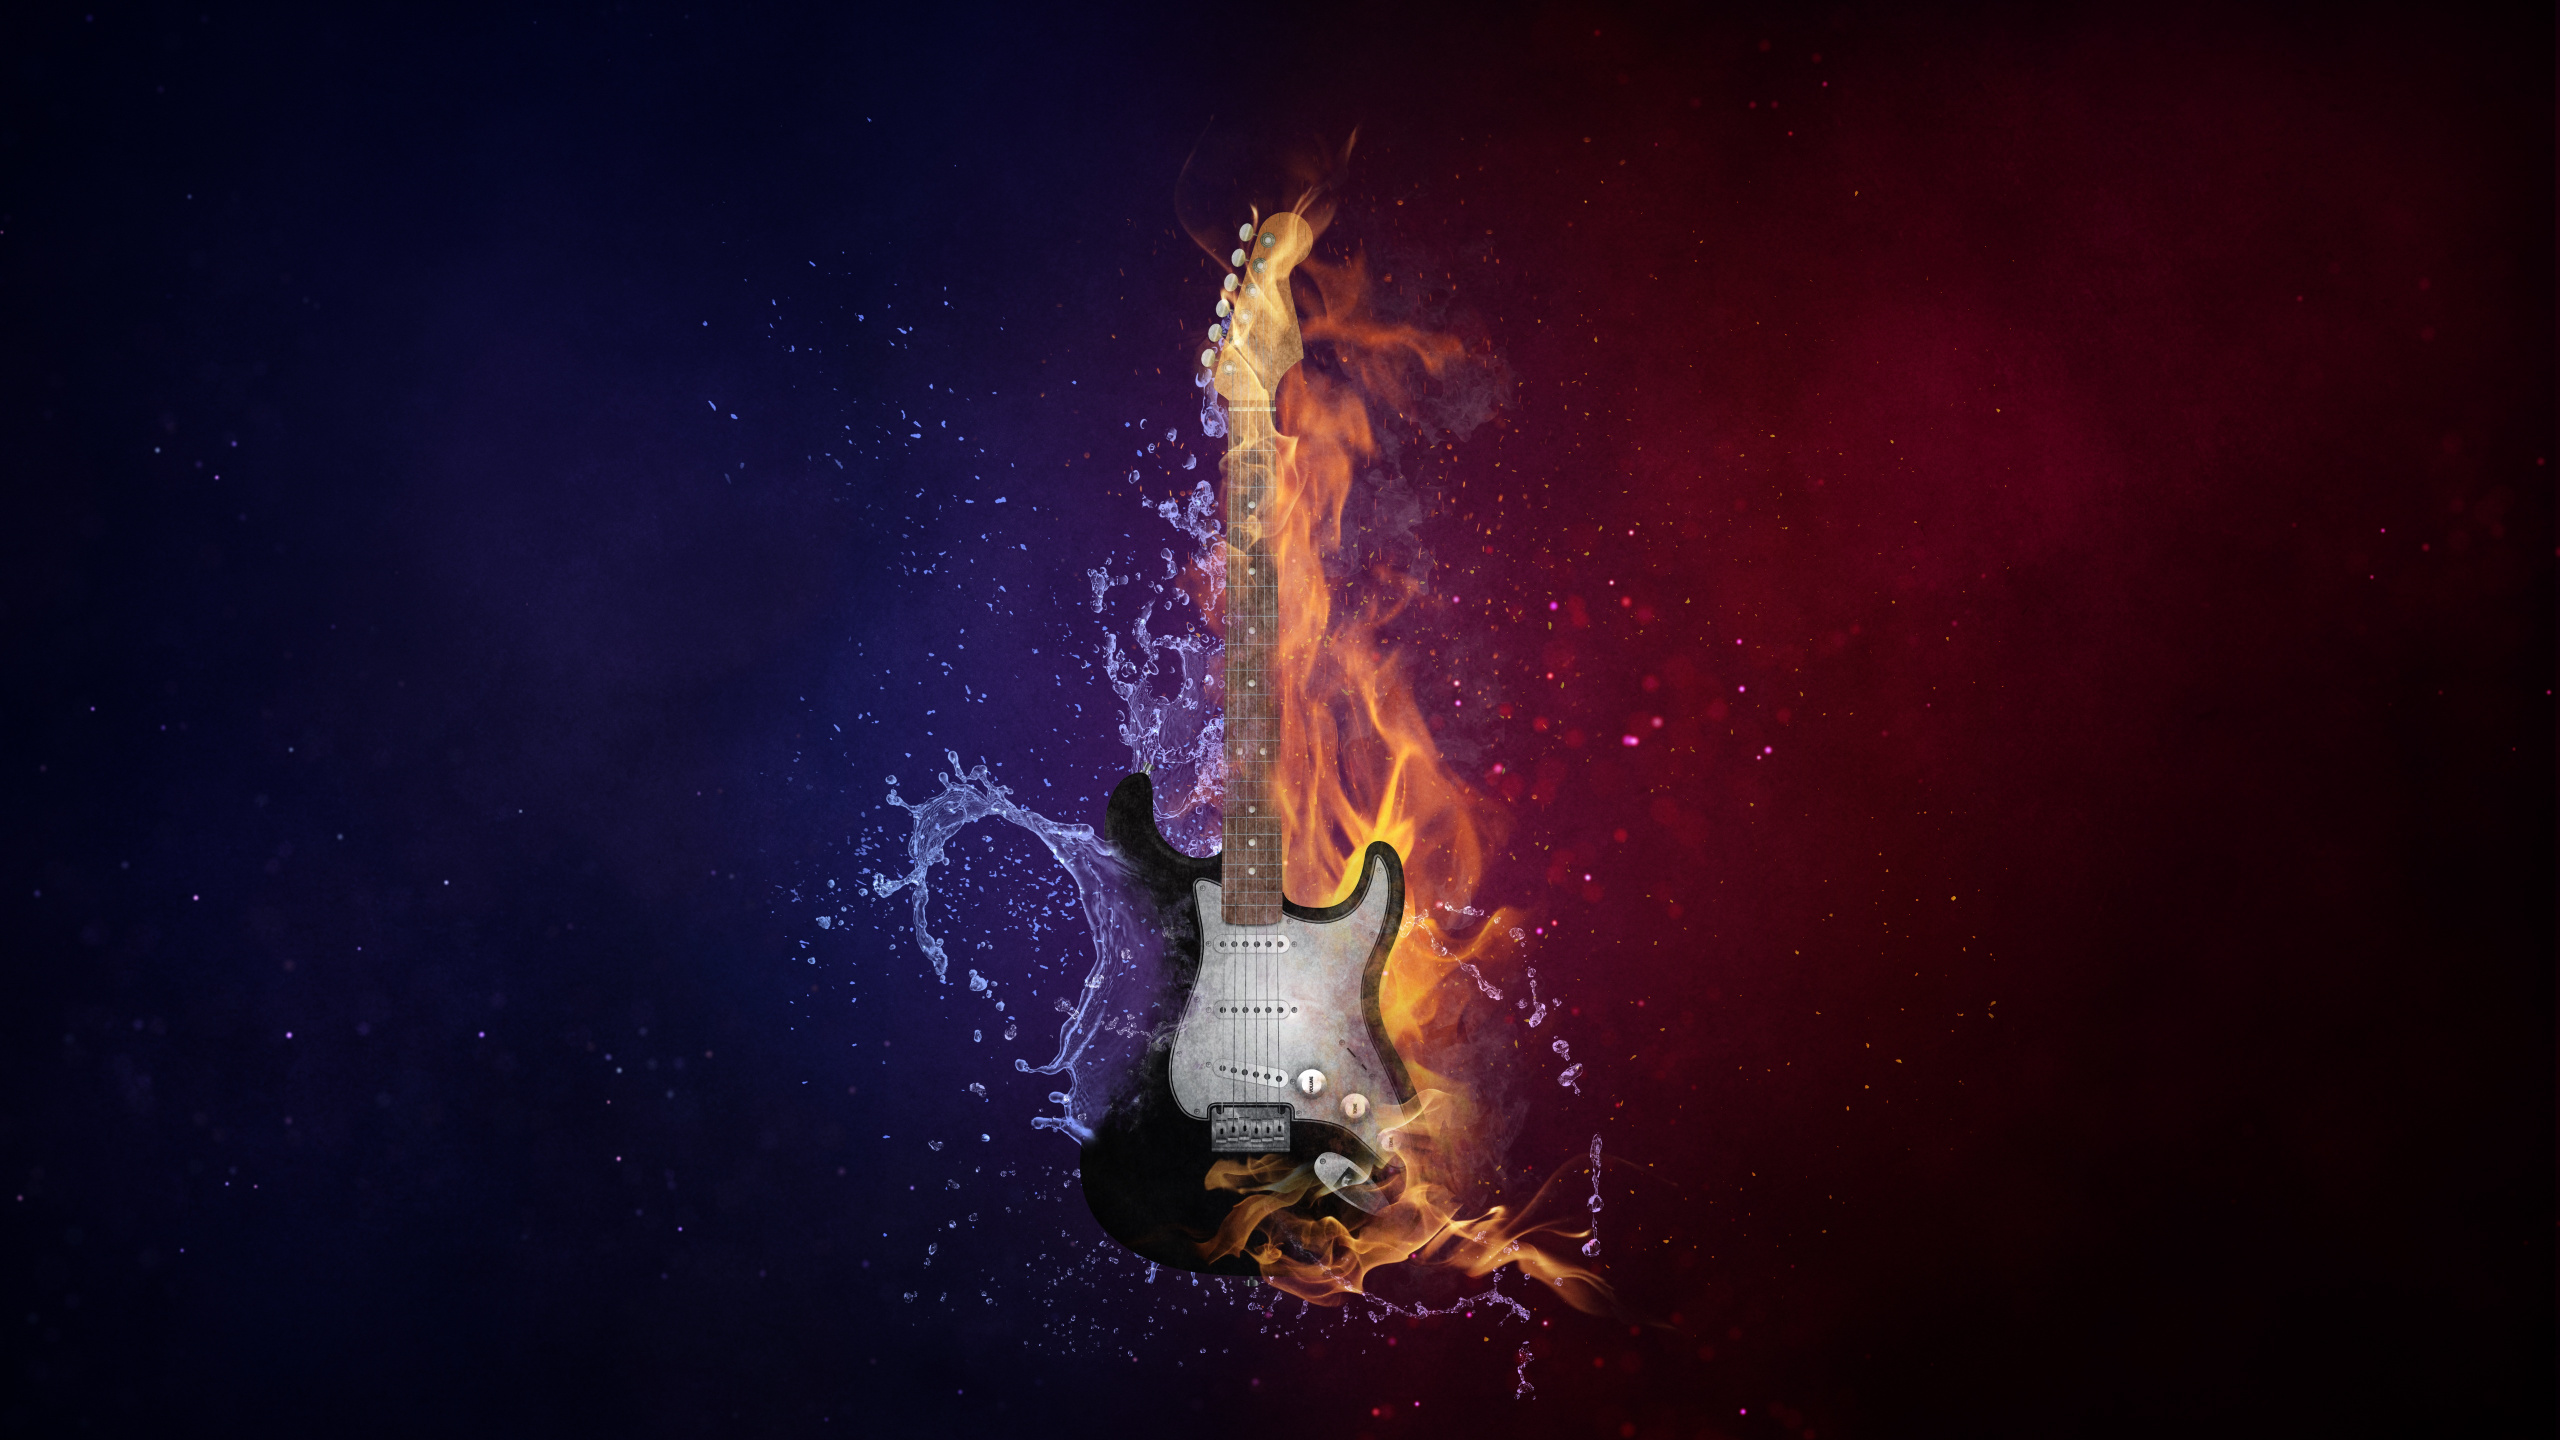 吉他, 热, 火焰, 气氛, 乐器 壁纸 2560x1440 允许